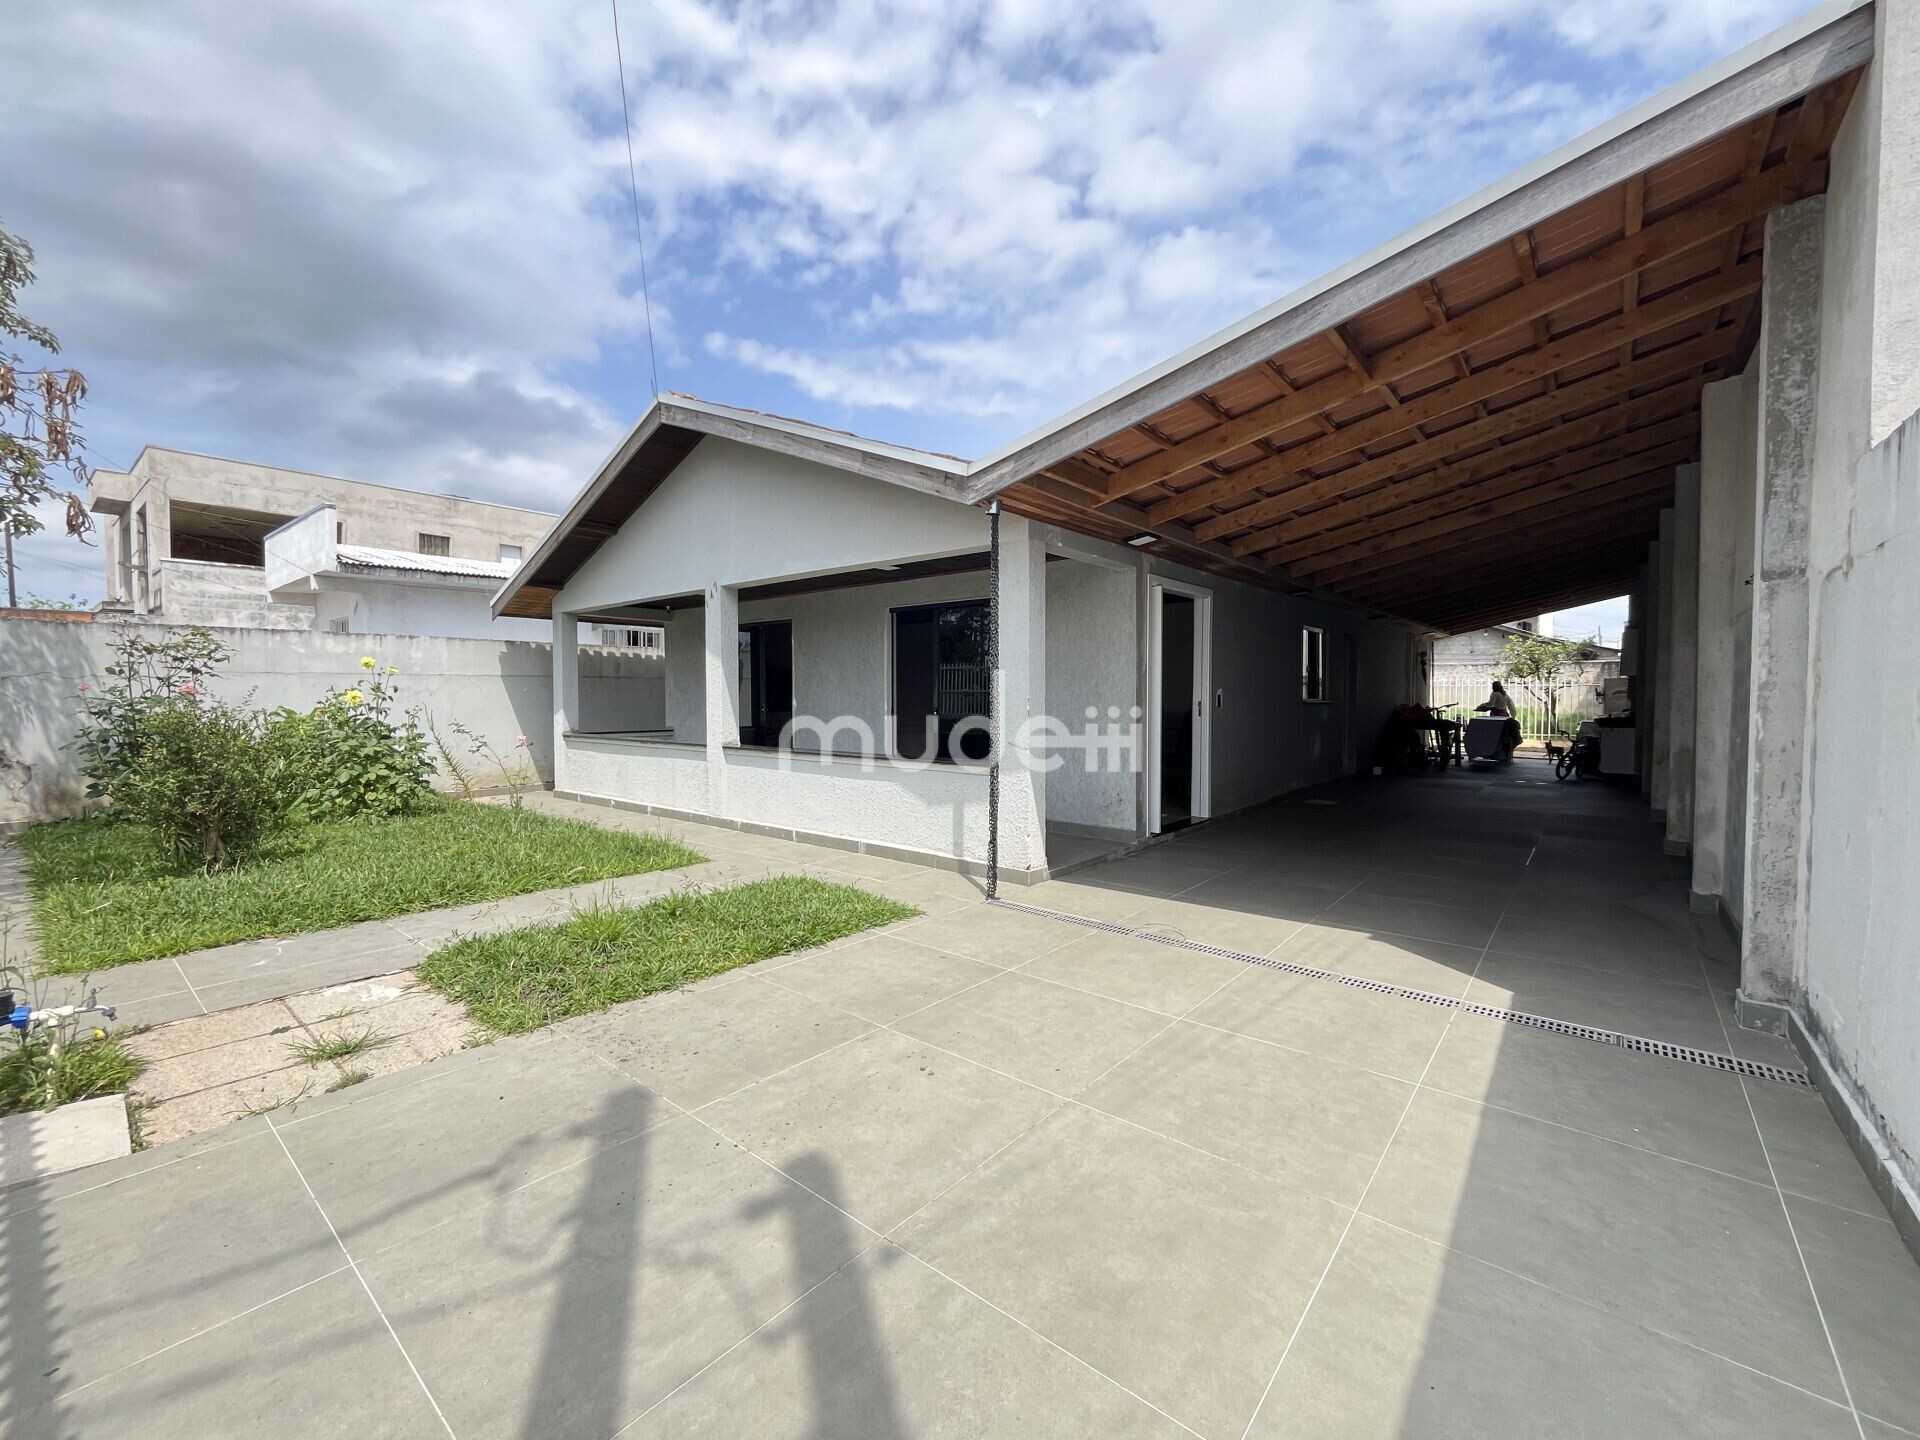 Casa à venda no bairro Guatupê - São José dos Pinhais/PR